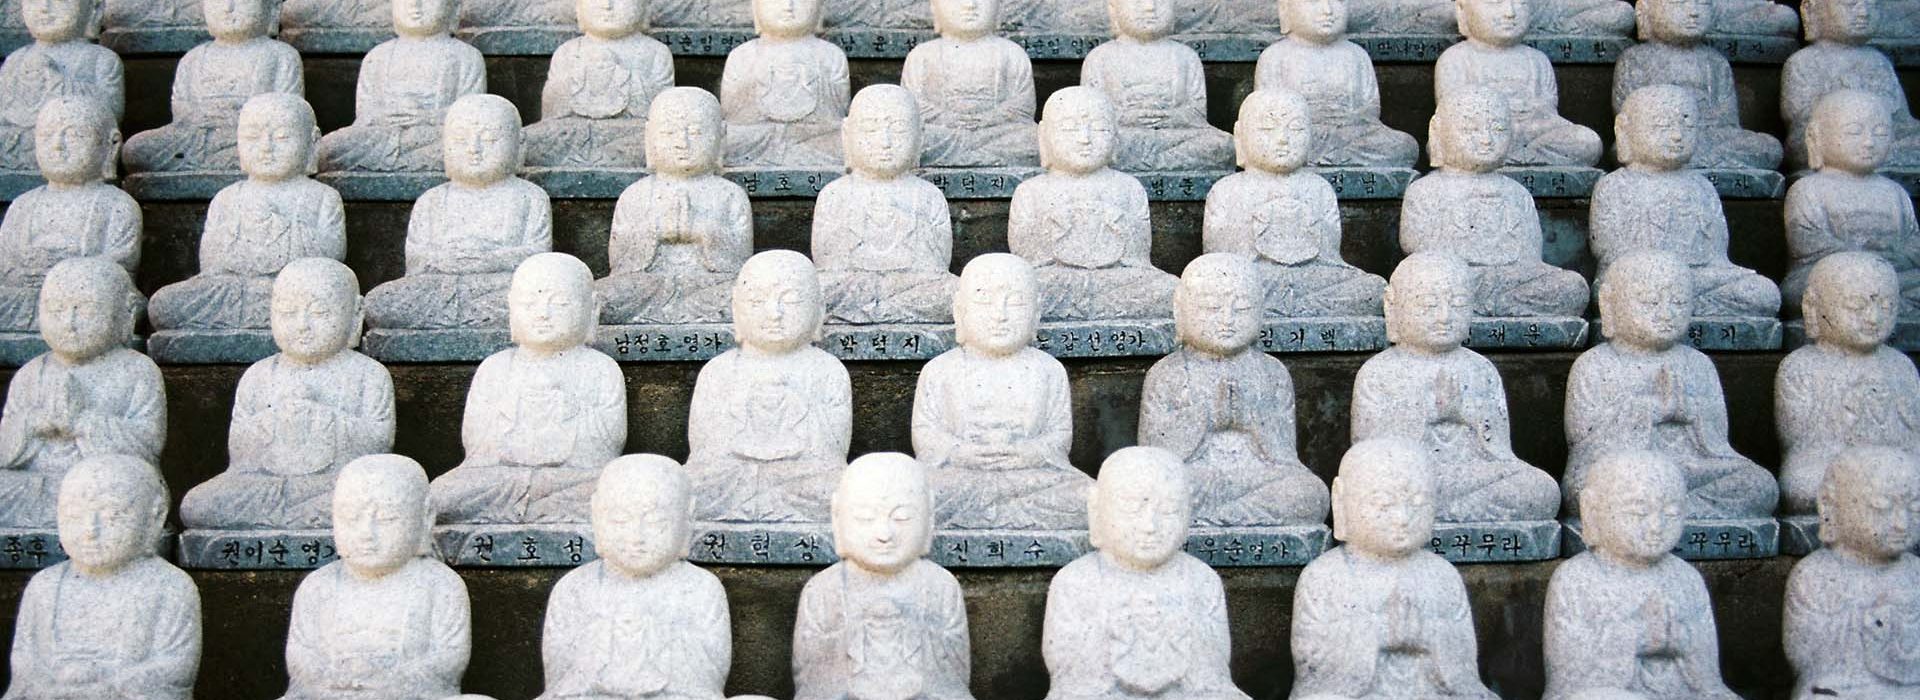 Buddhismo Zen Corso di studi triennale